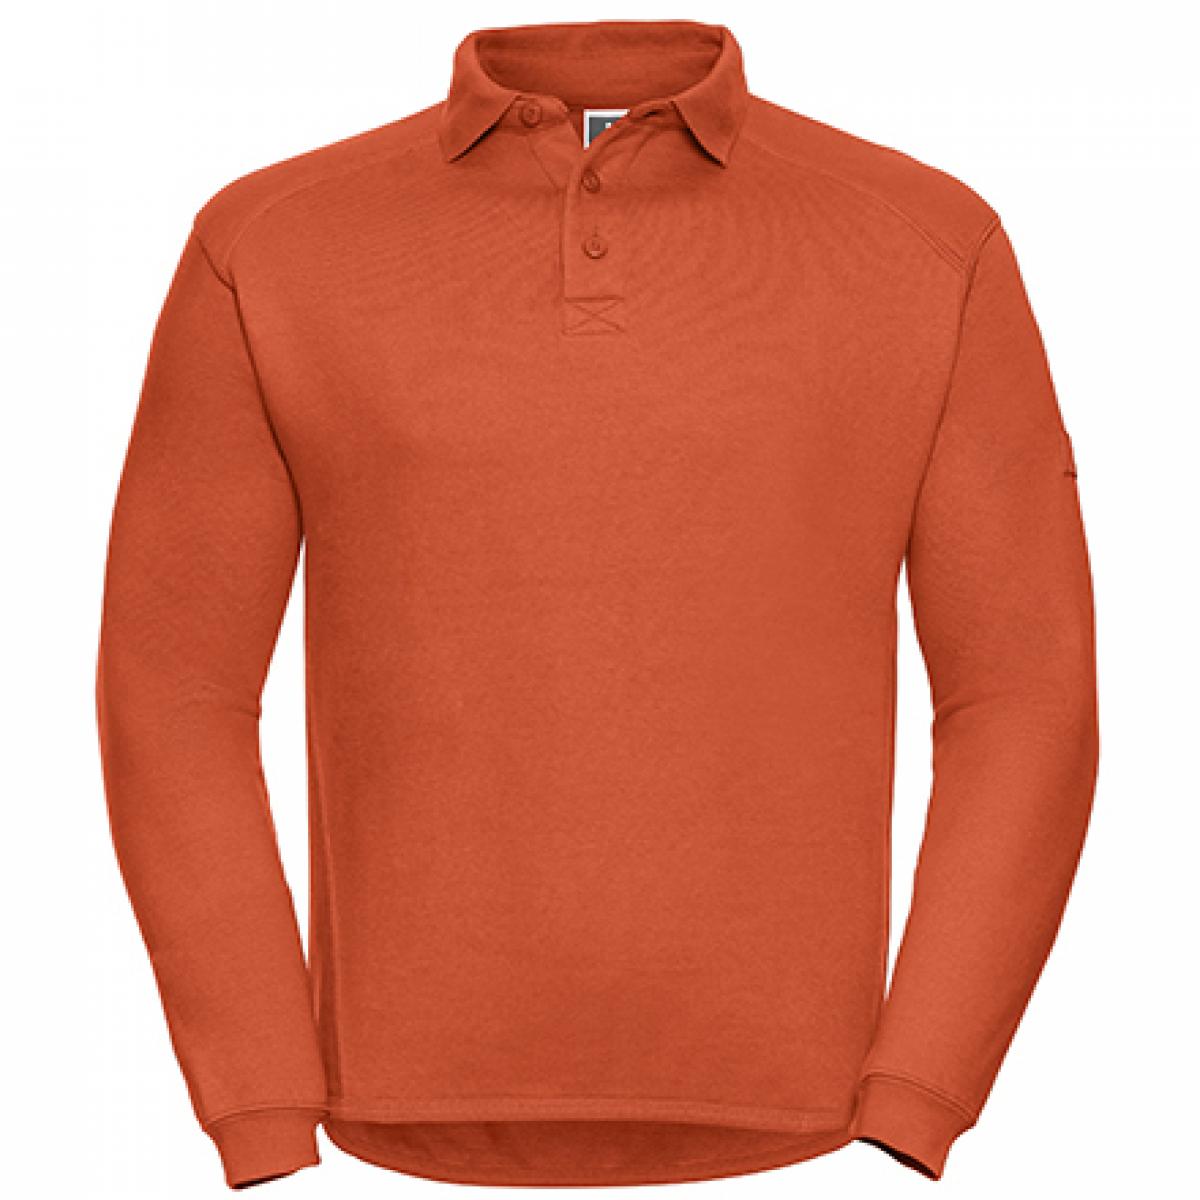 Hersteller: Russell Herstellernummer: R-012M-0 Artikelbezeichnung: Herren Workwear-Poloshirt - Waschbar bis 60 °C - bis 4XL Farbe: Orange